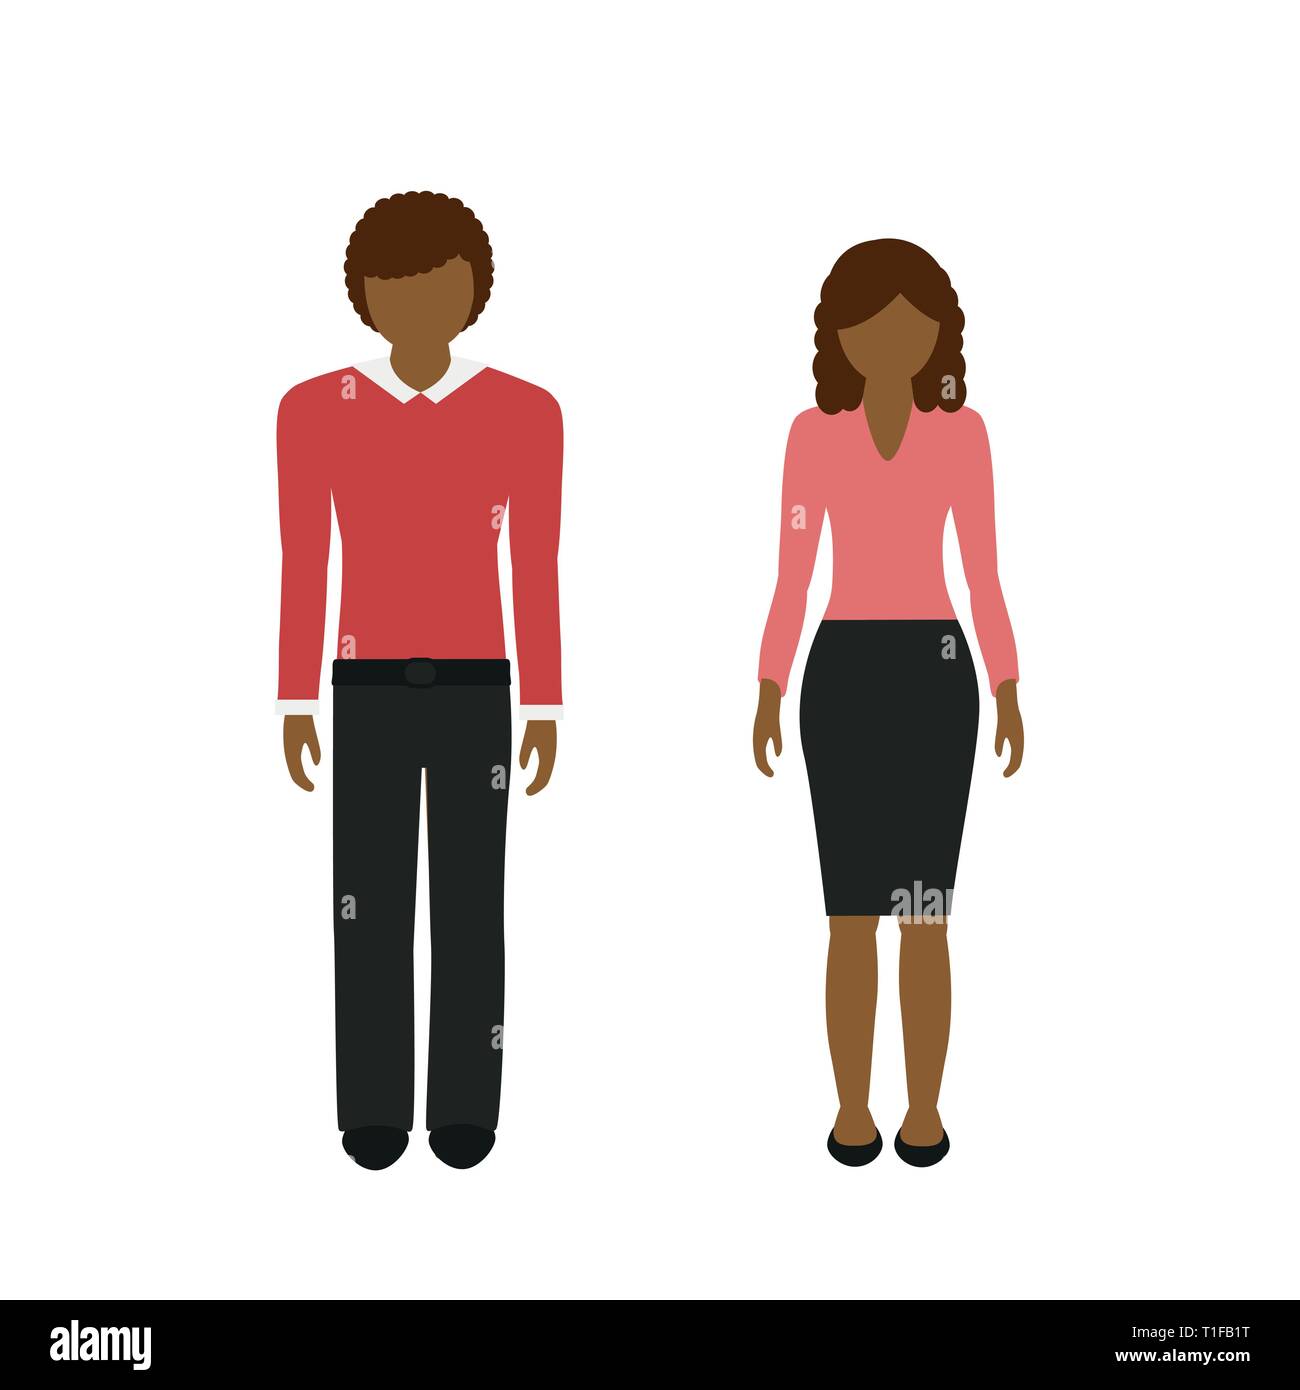 Mann und Frau Charakter mit dunkler Hautfarbe und braunem Haar auf weißem Hintergrund Vektor-illustration EPS 10 isoliert Stock Vektor